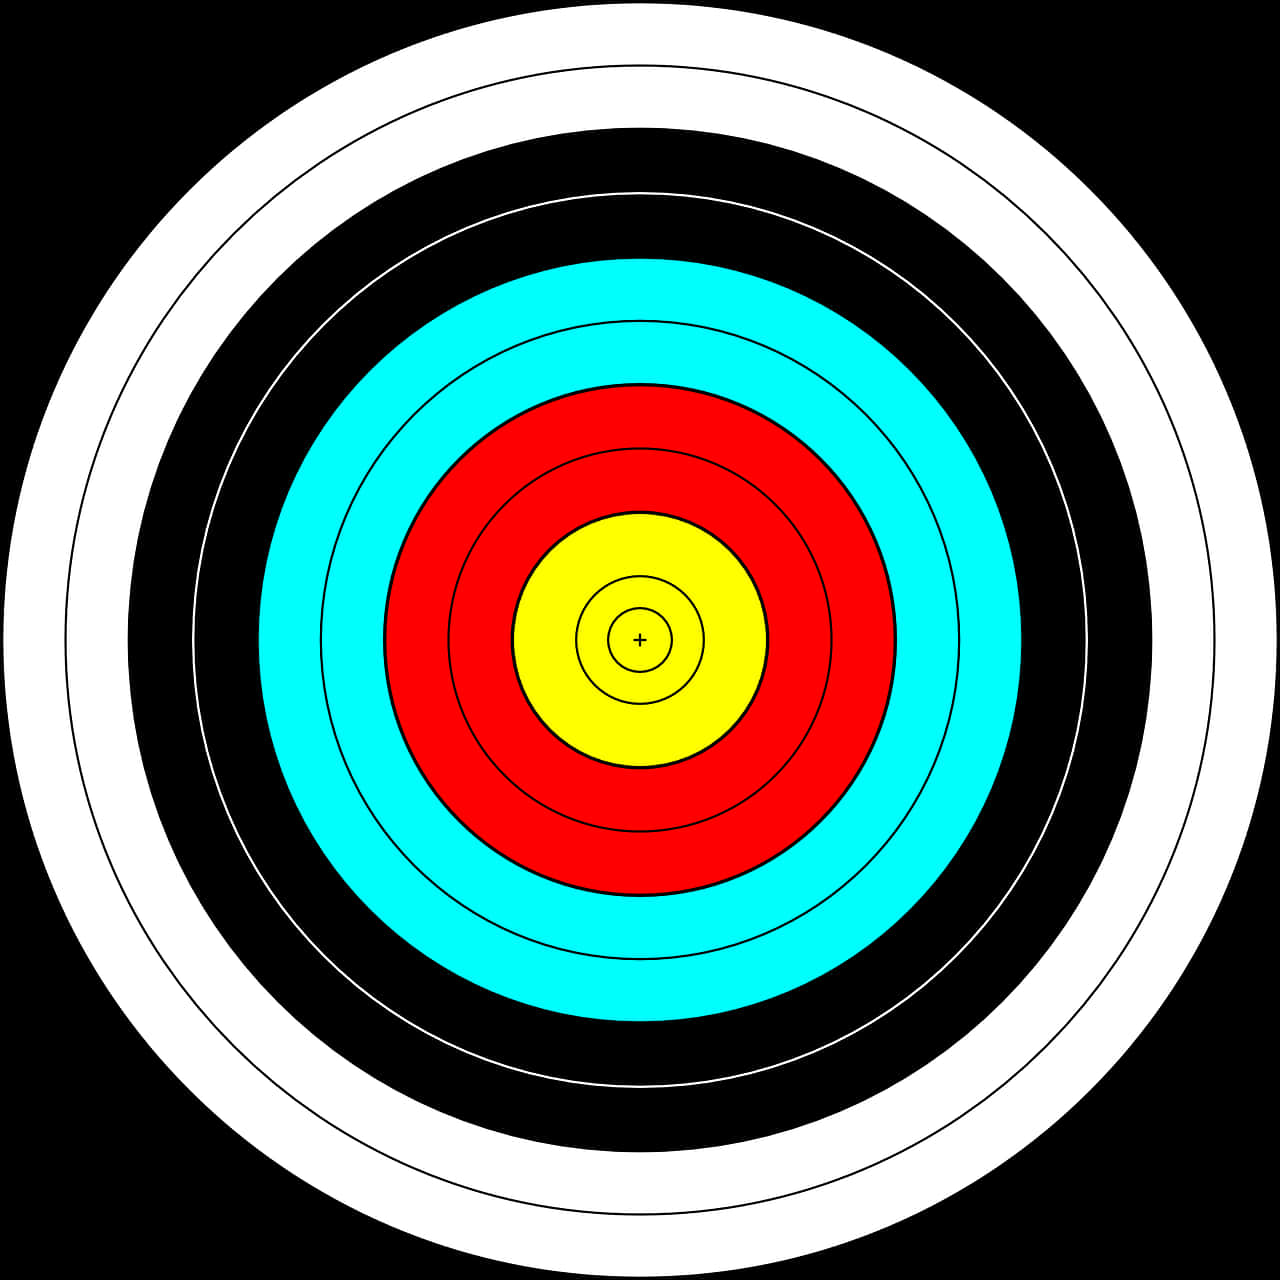 Colorful Archery Target Center Bullseye